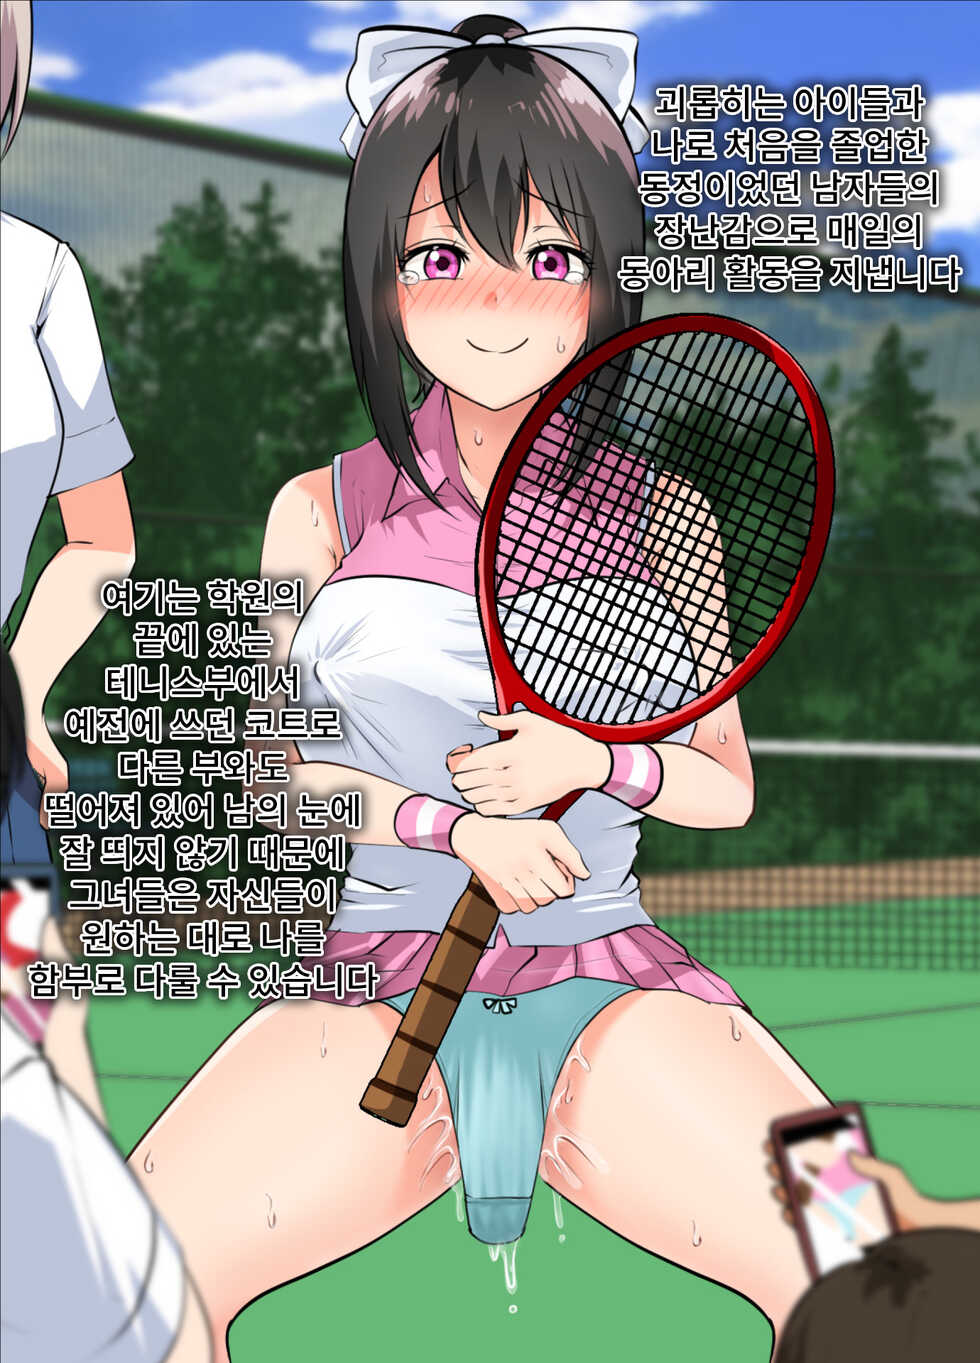 [Takahashi] Takuhai-saki de...... ~Anoko wa Ijimerarete Boku ni Haji o Sarasu~ & Sana no "Tennis-bu Nikki" Shinsaku 2-hondate! | 택배사에서...~ 그 아이는 괴롭힘 당해서 나에게 망신을 당한다~&사나의 「테니스부 일기」 신작 2편 출간! [Korean] - Page 34